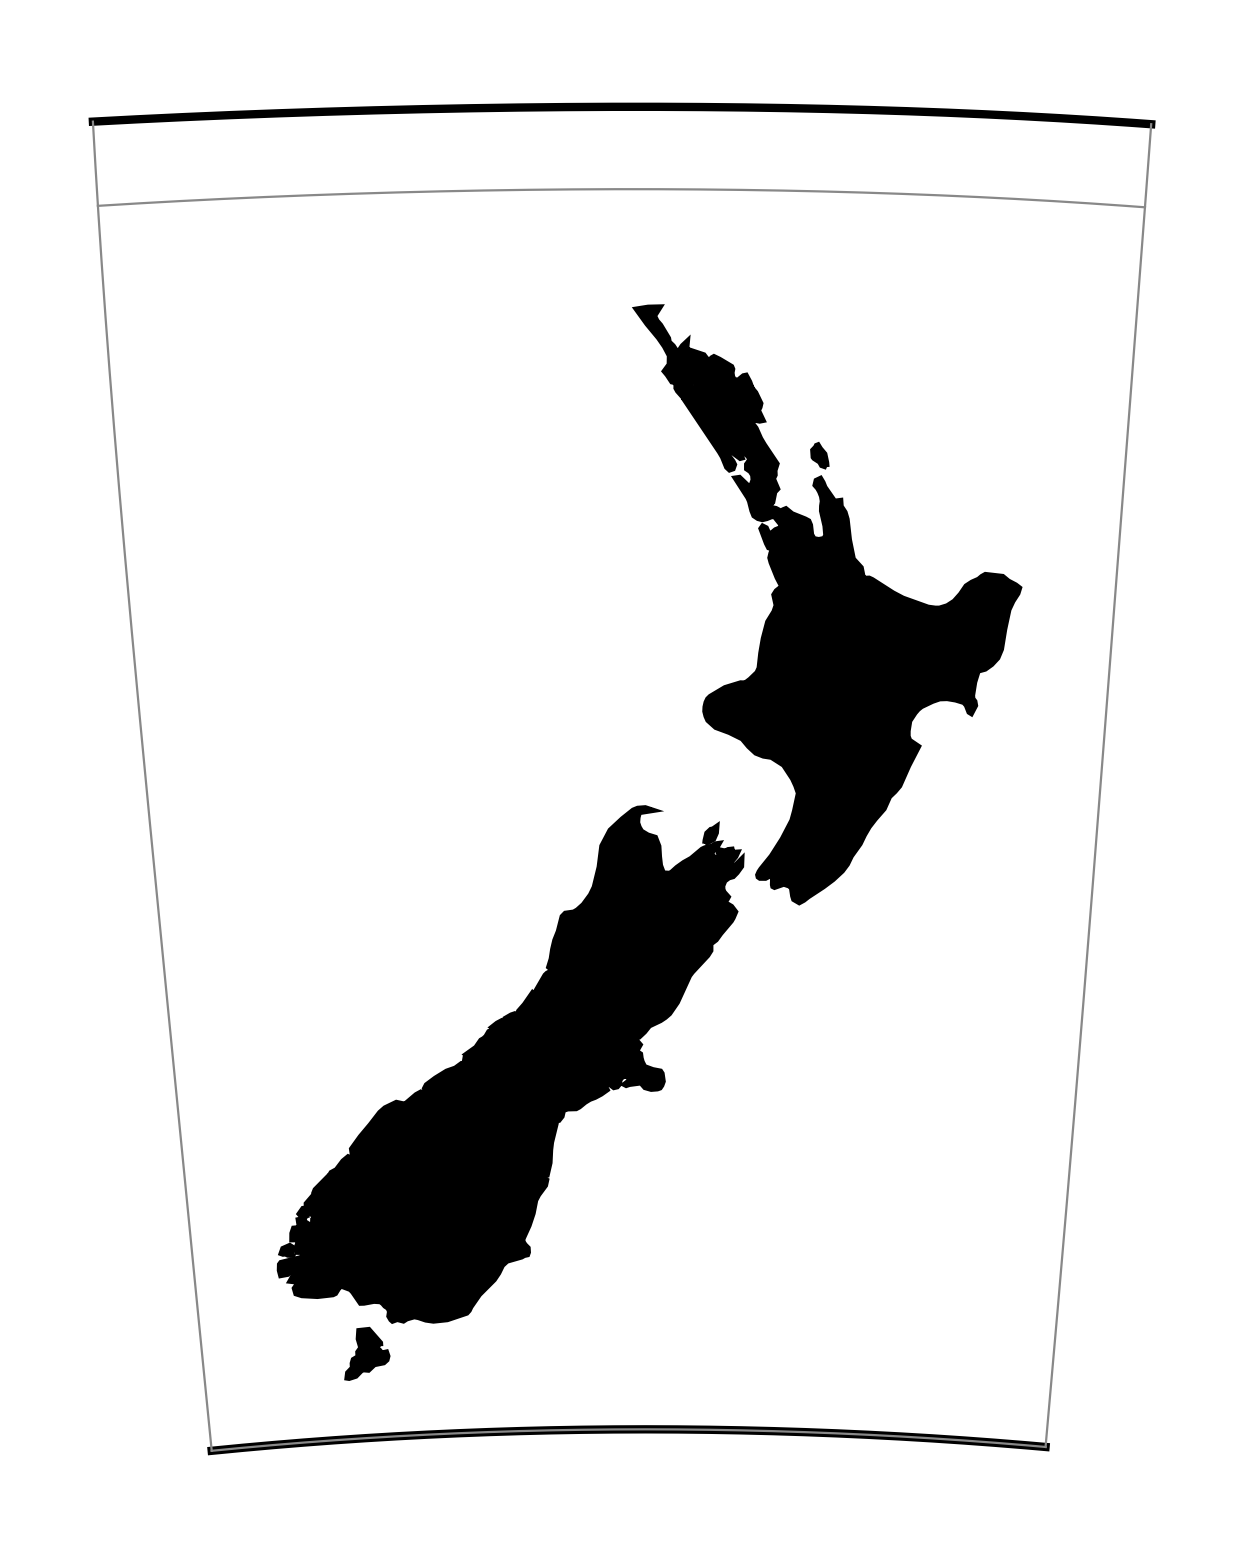 New Zealand Map Grid (EPSG:27200)